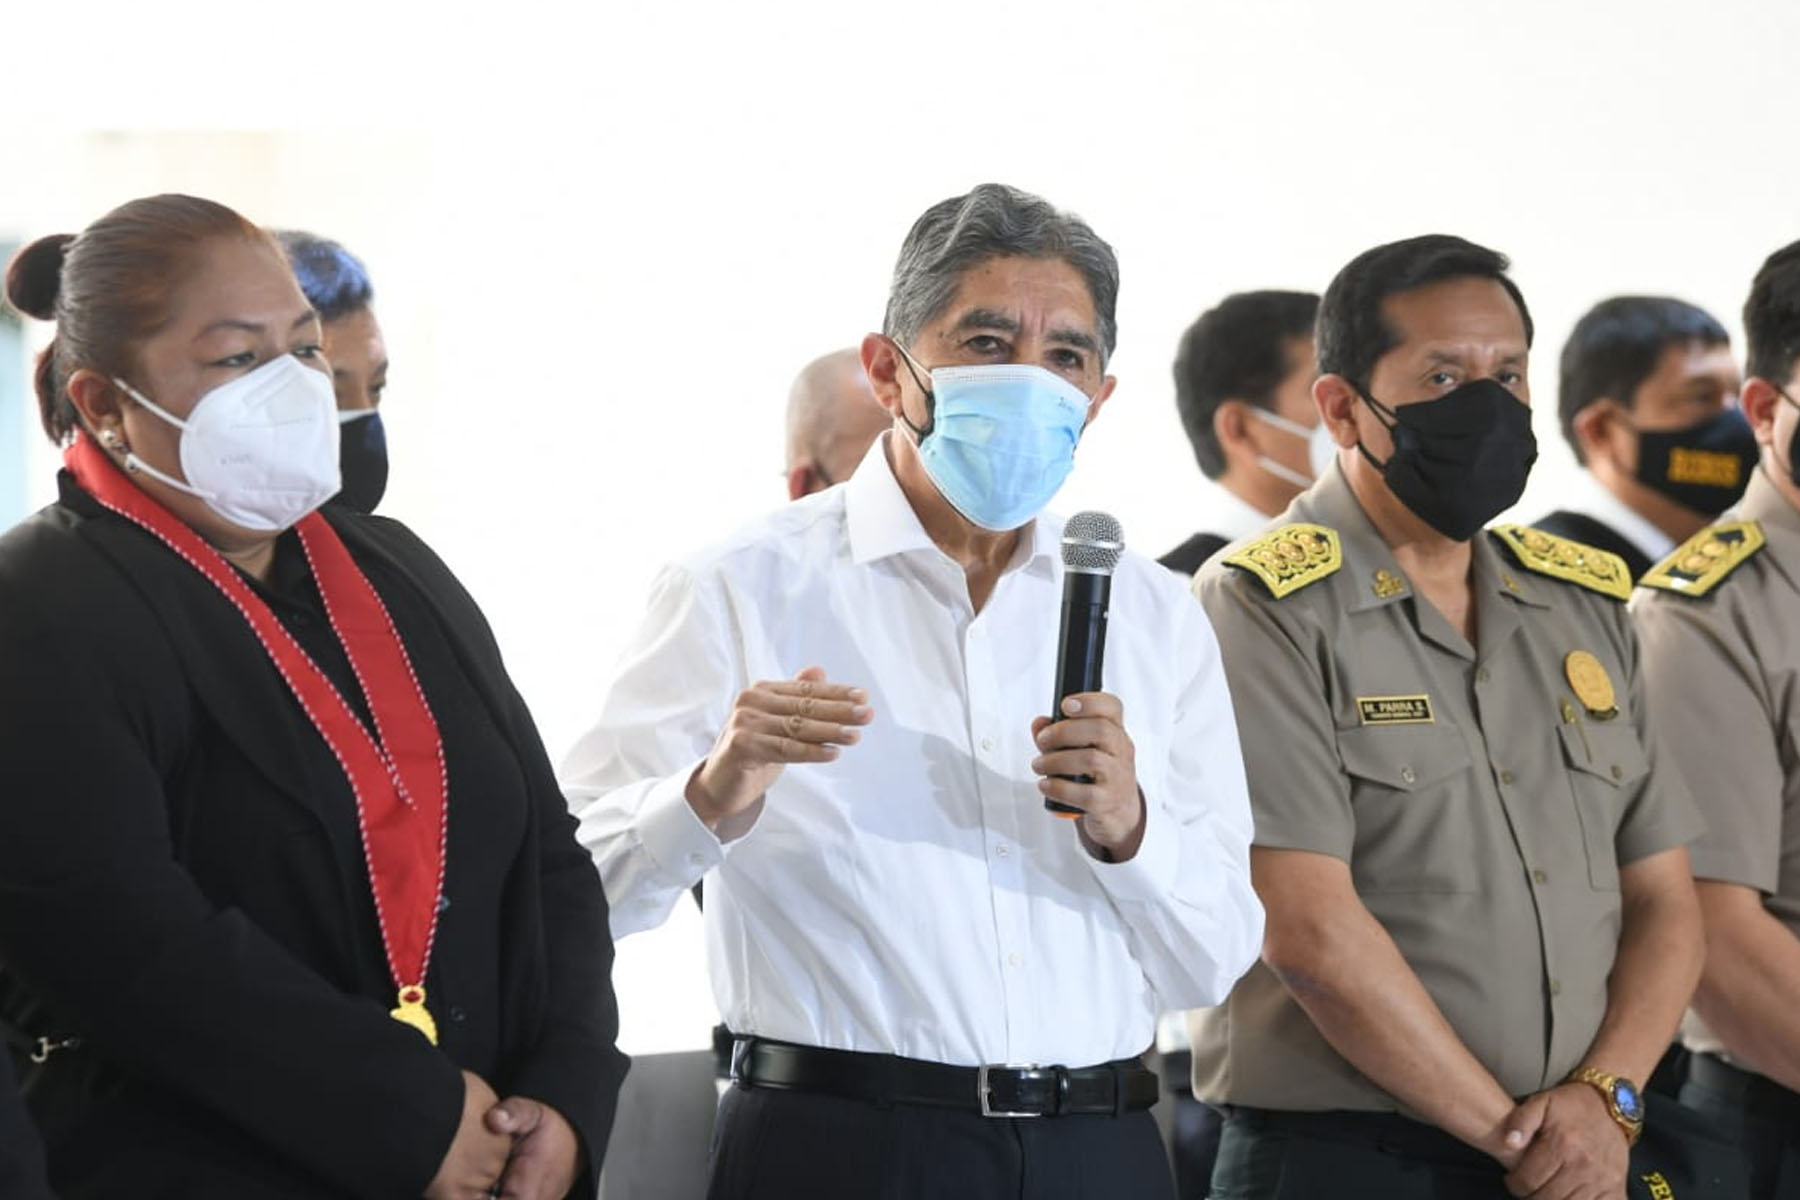 El ministro del Interior, Avelino Guillén, anunció que “ya está en trámite” la declaratoria del estado de emergencia de Lima Metropolitana. Foto: Ministerio del Interior.